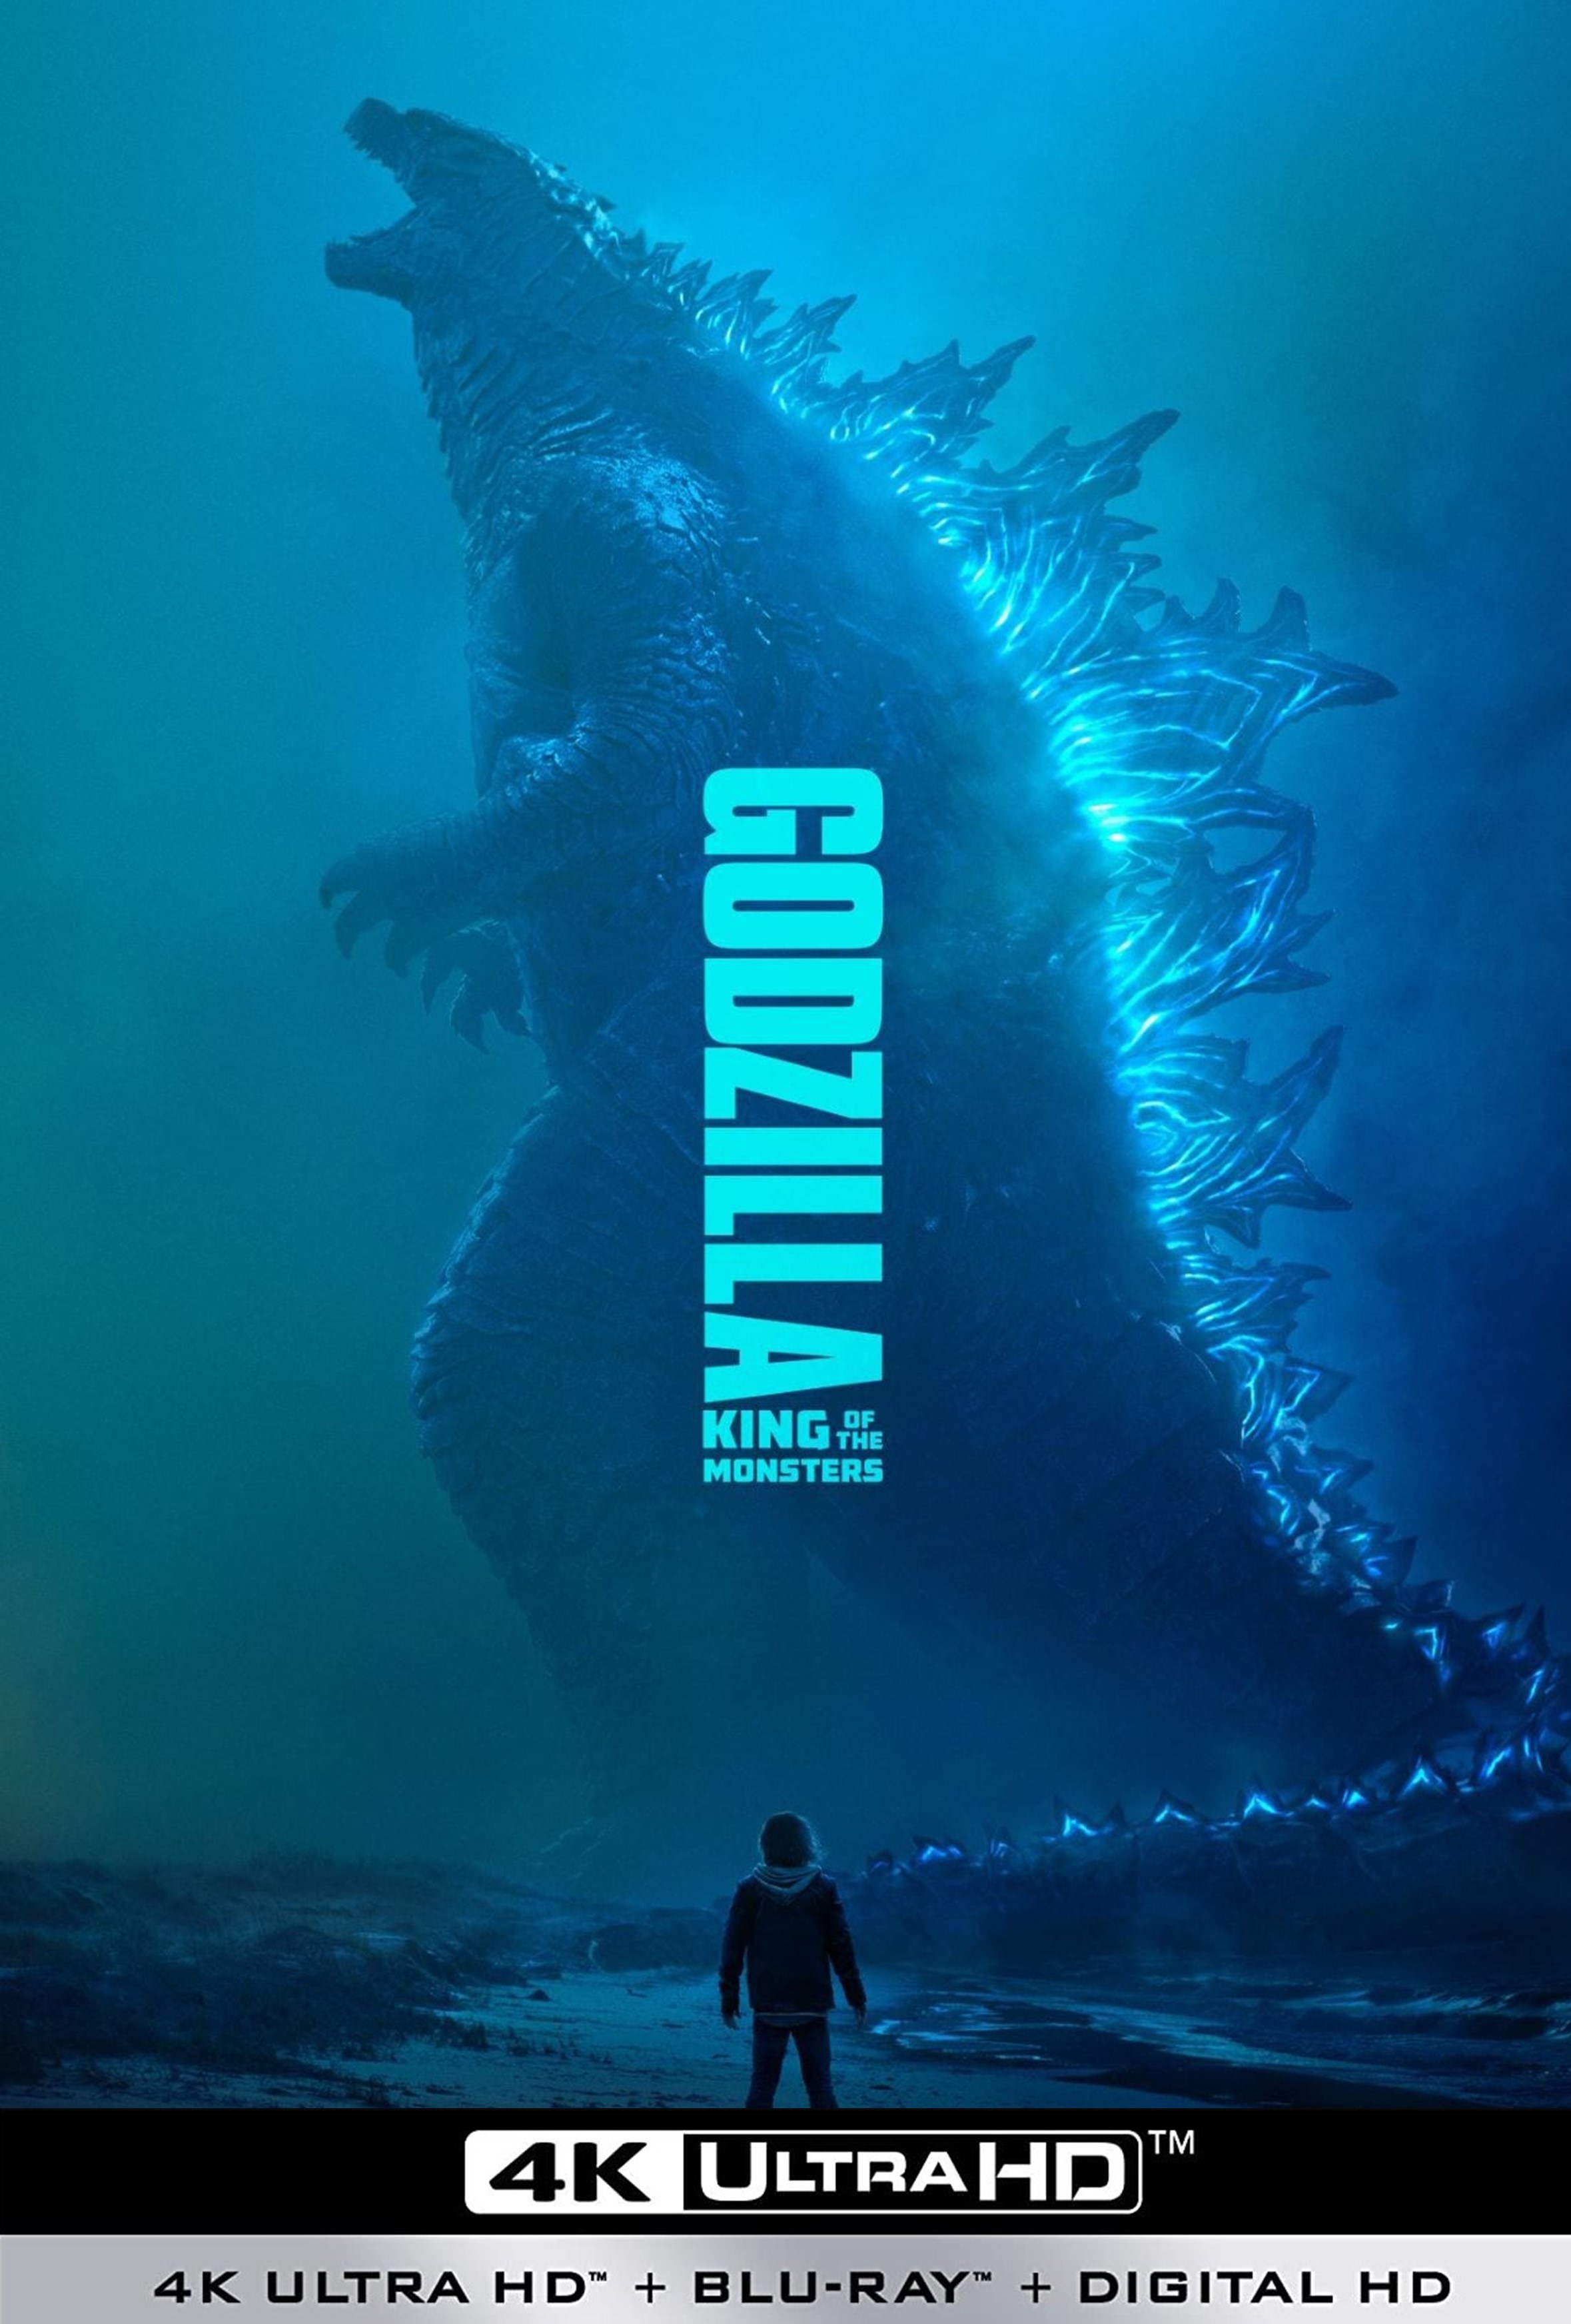 Stiahni si UHD Filmy Godzilla II: Kral monster / Godzilla: King of Monster  (2019)(CZ/EN)(2160p 4K WebRip) = CSFD 52%